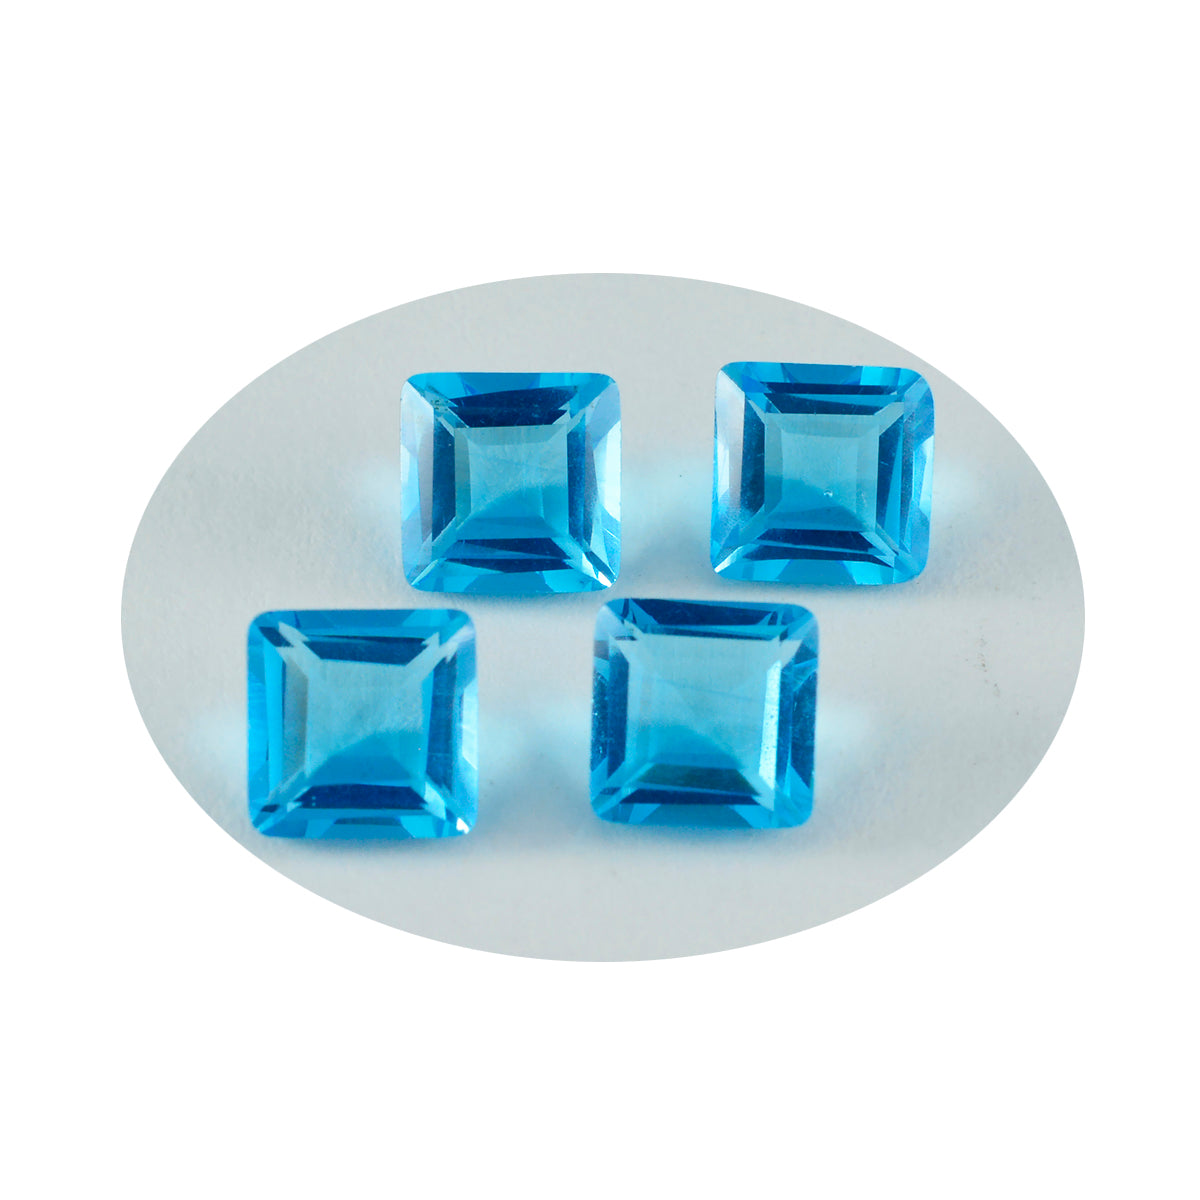 Riyogems 1 Stück blauer Topas, CZ, facettiert, 10 x 10 mm, quadratische Form, schön aussehende, hochwertige lose Edelsteine